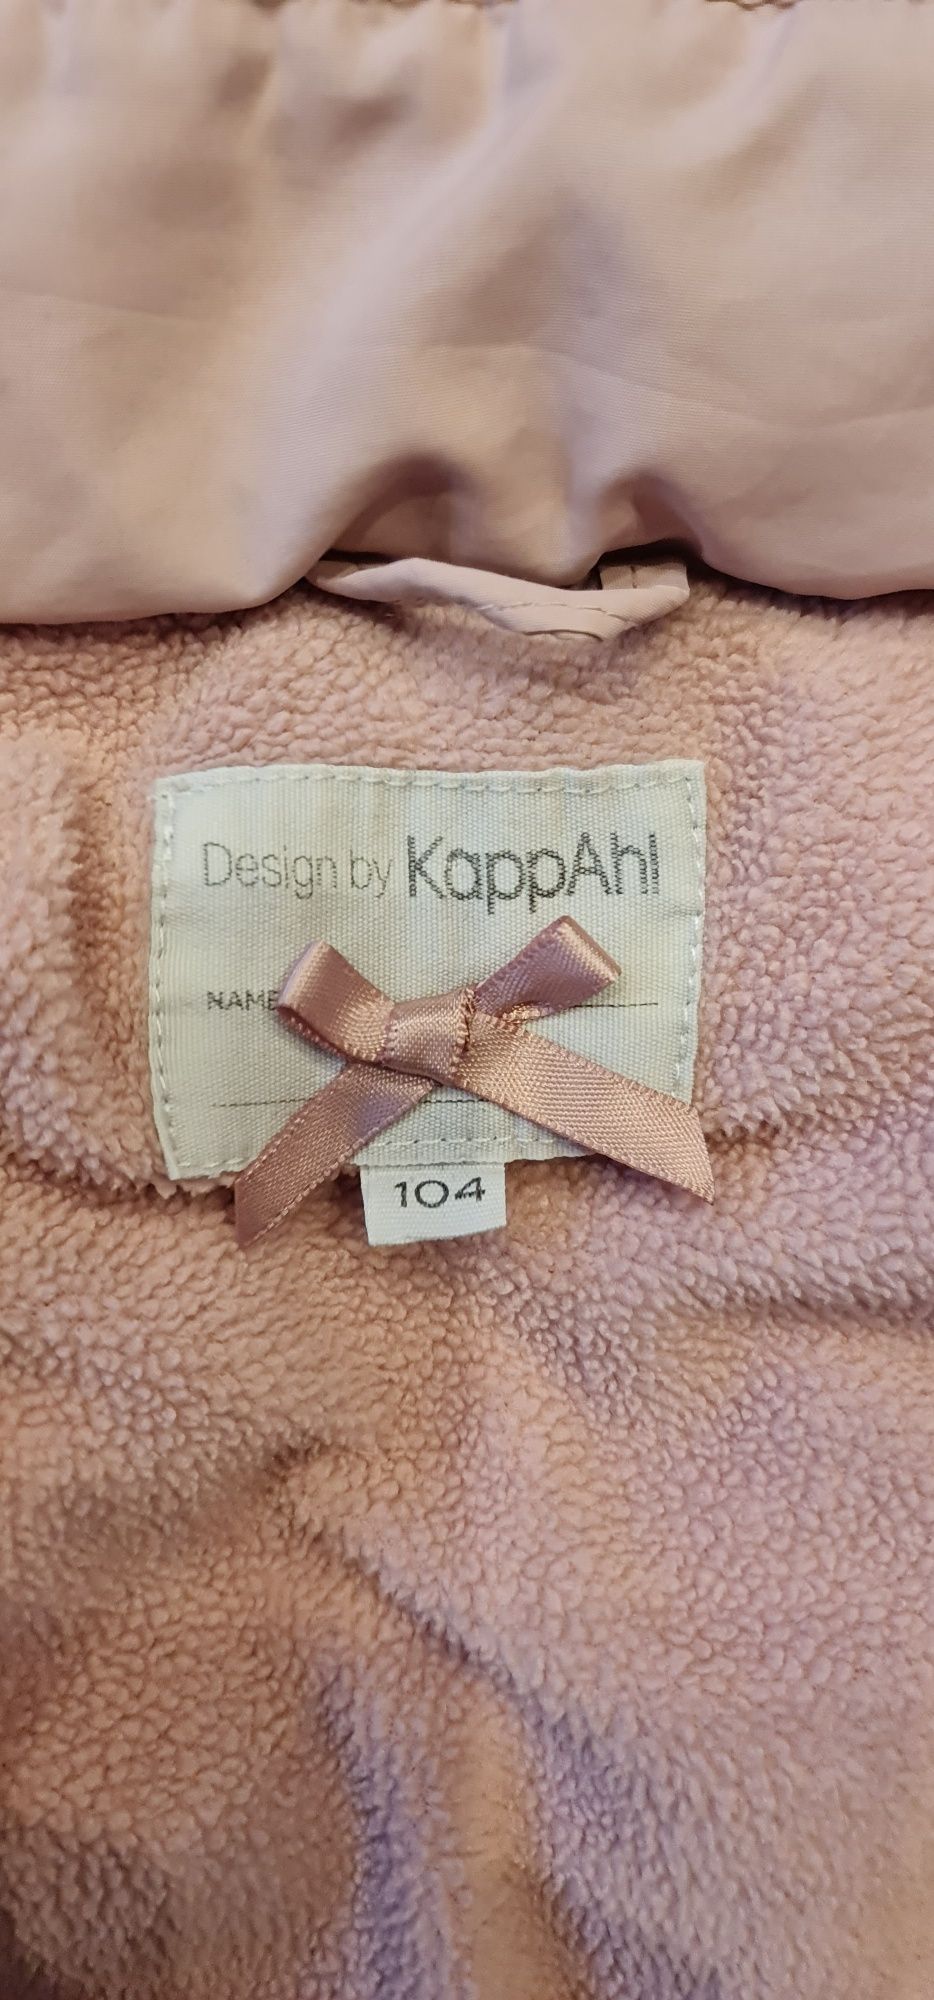 Zimowa kurteczka /płaszczyk firmy KappAhl rozmiar 104 dla dziewczynki